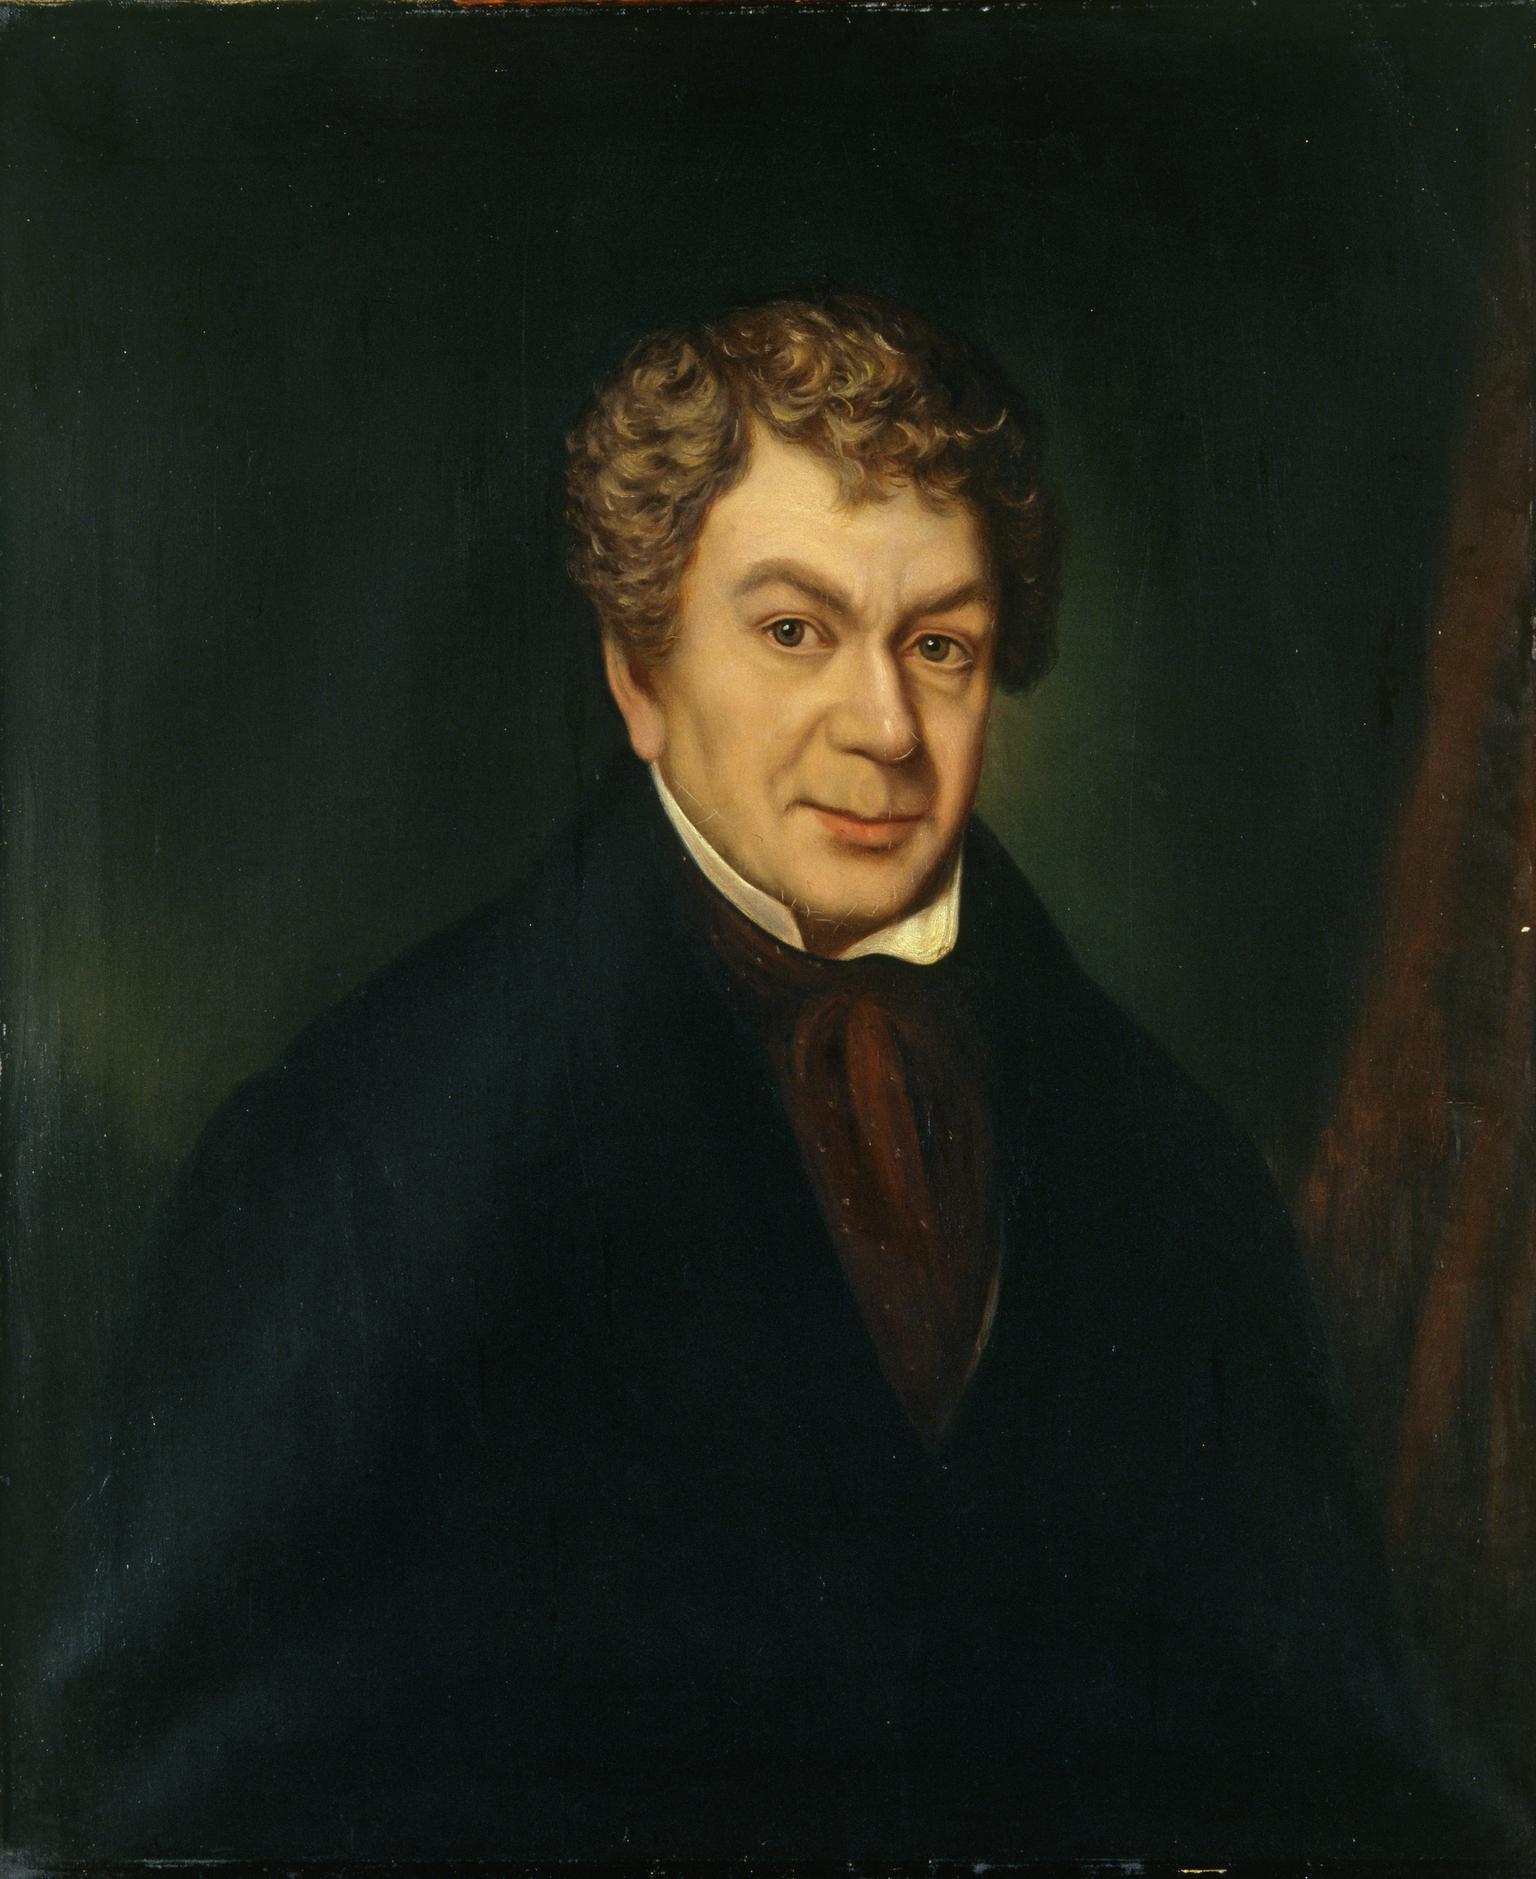 David Owen, Dewi Wyn o Eifion (1784-1841)